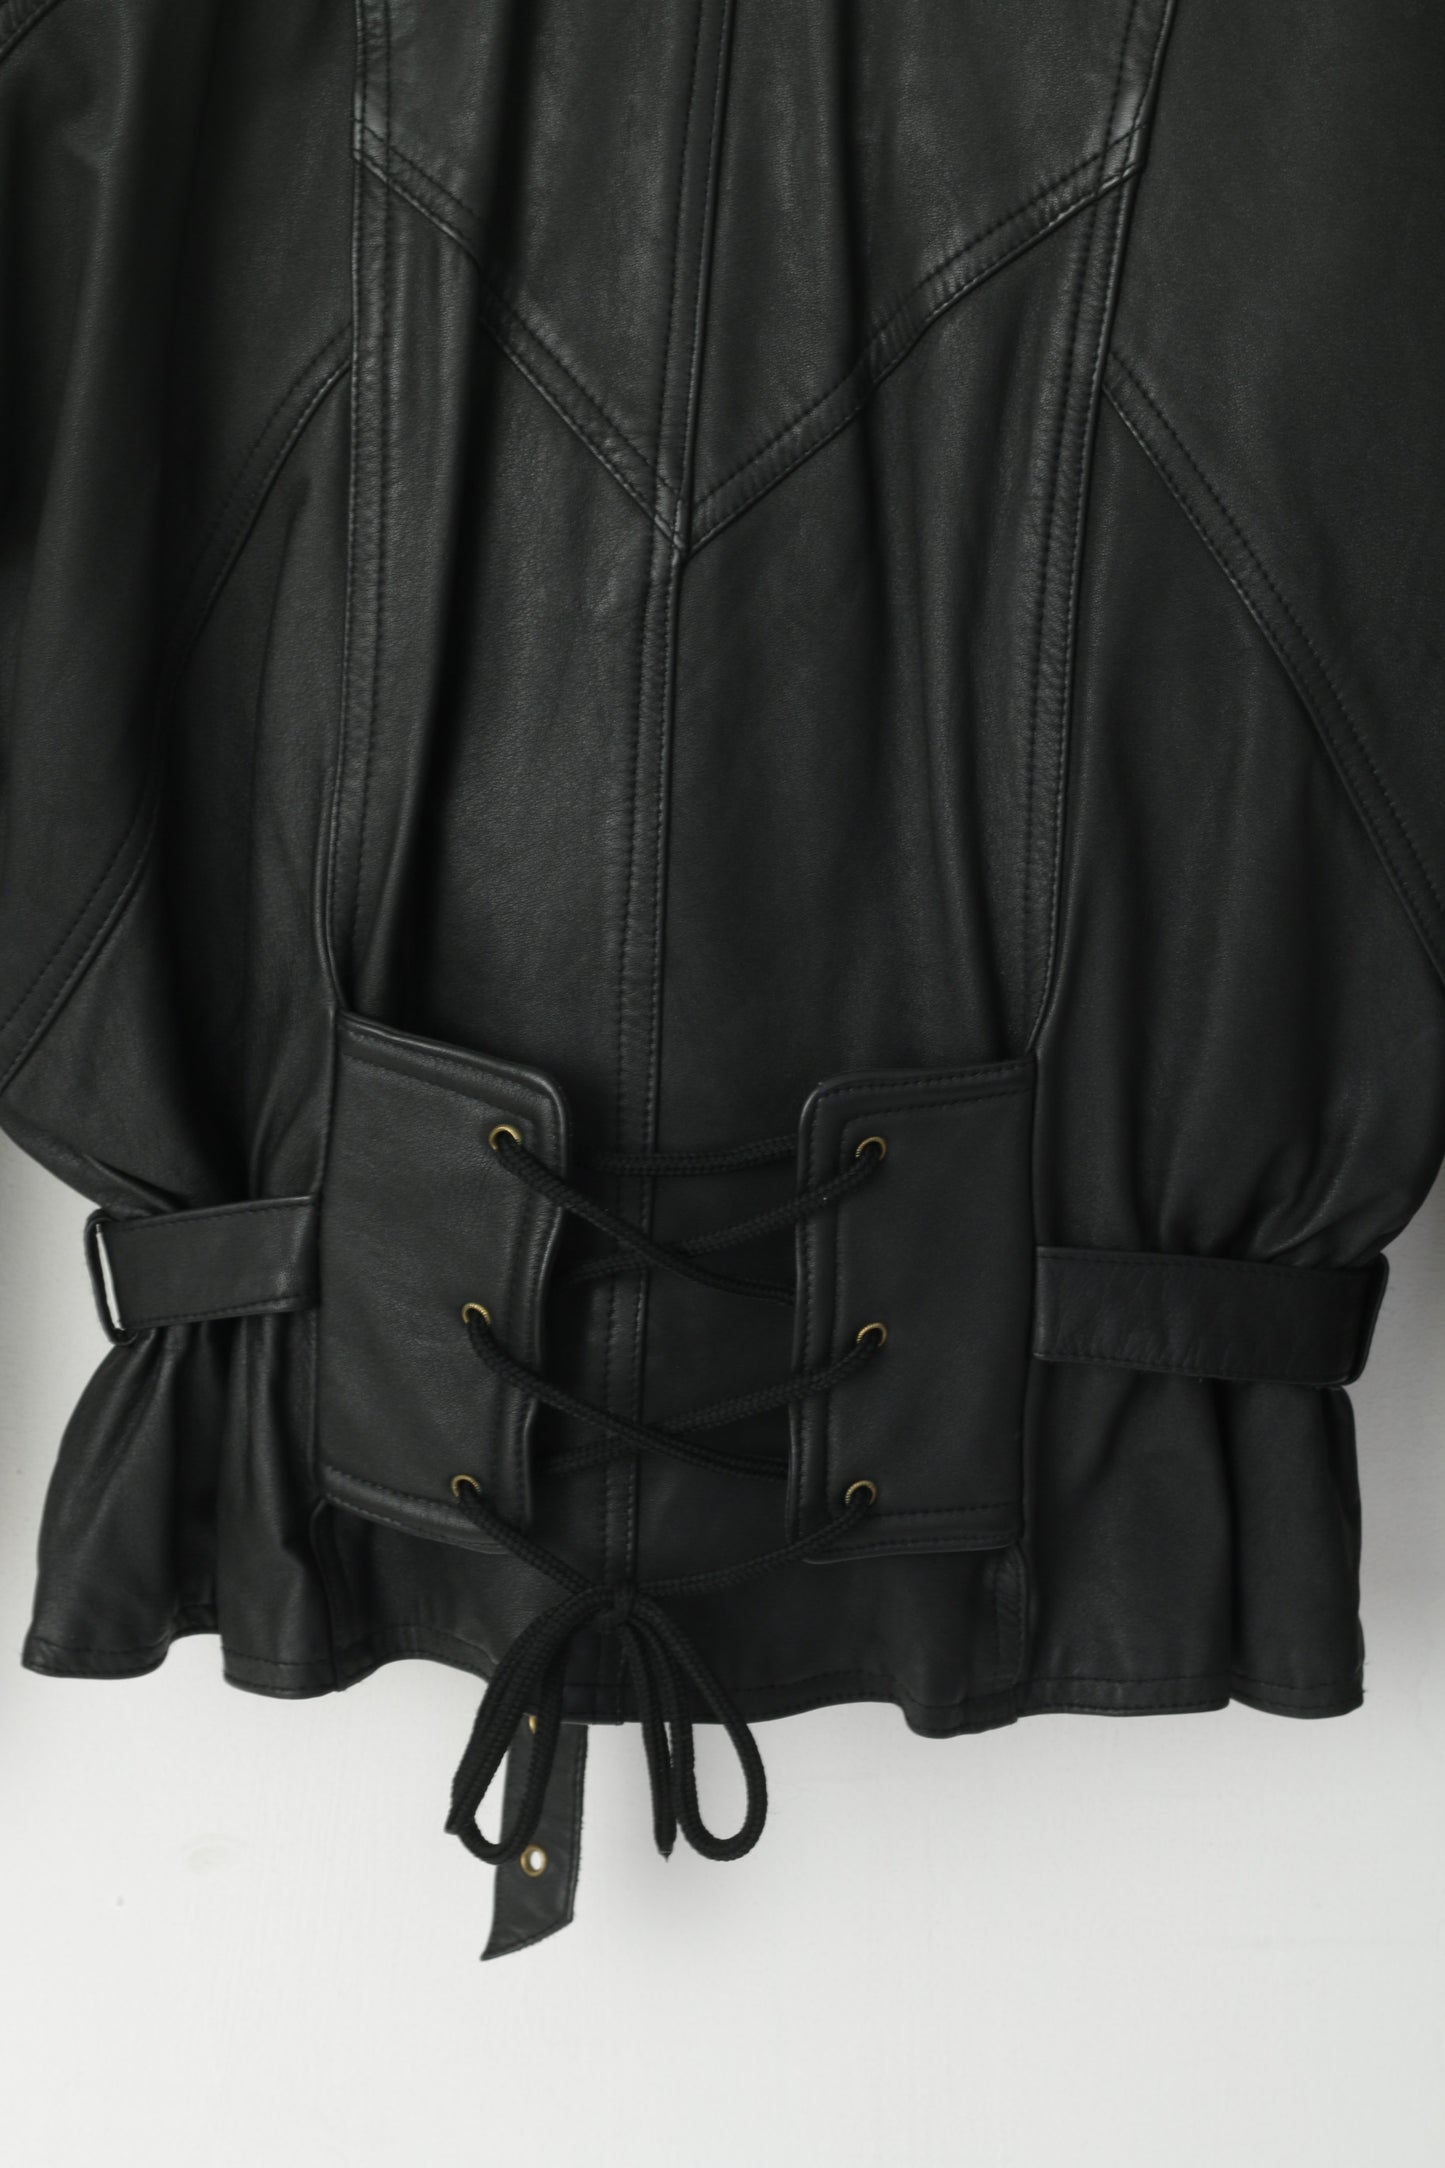 Elazar Women M Jacket Black Leather Vintage Soft Biker Removable Lining Zip Up Top